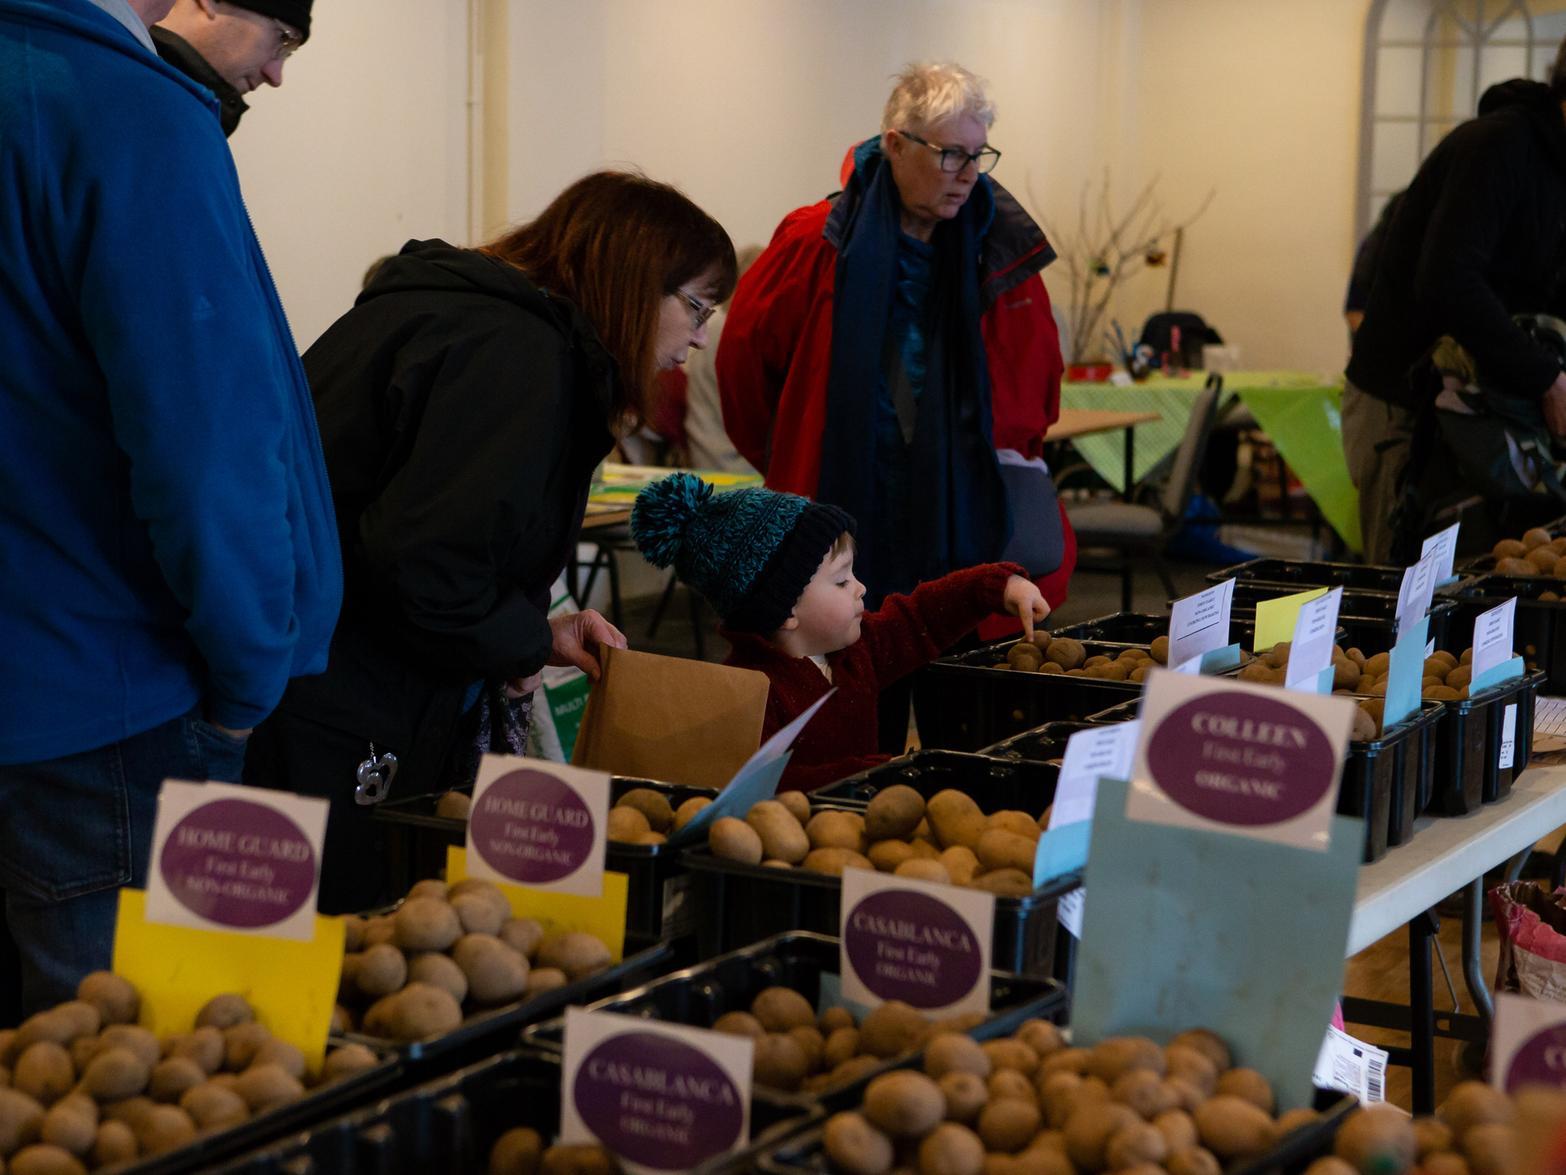 Potato Day at Mytholmroyd Community Centre.